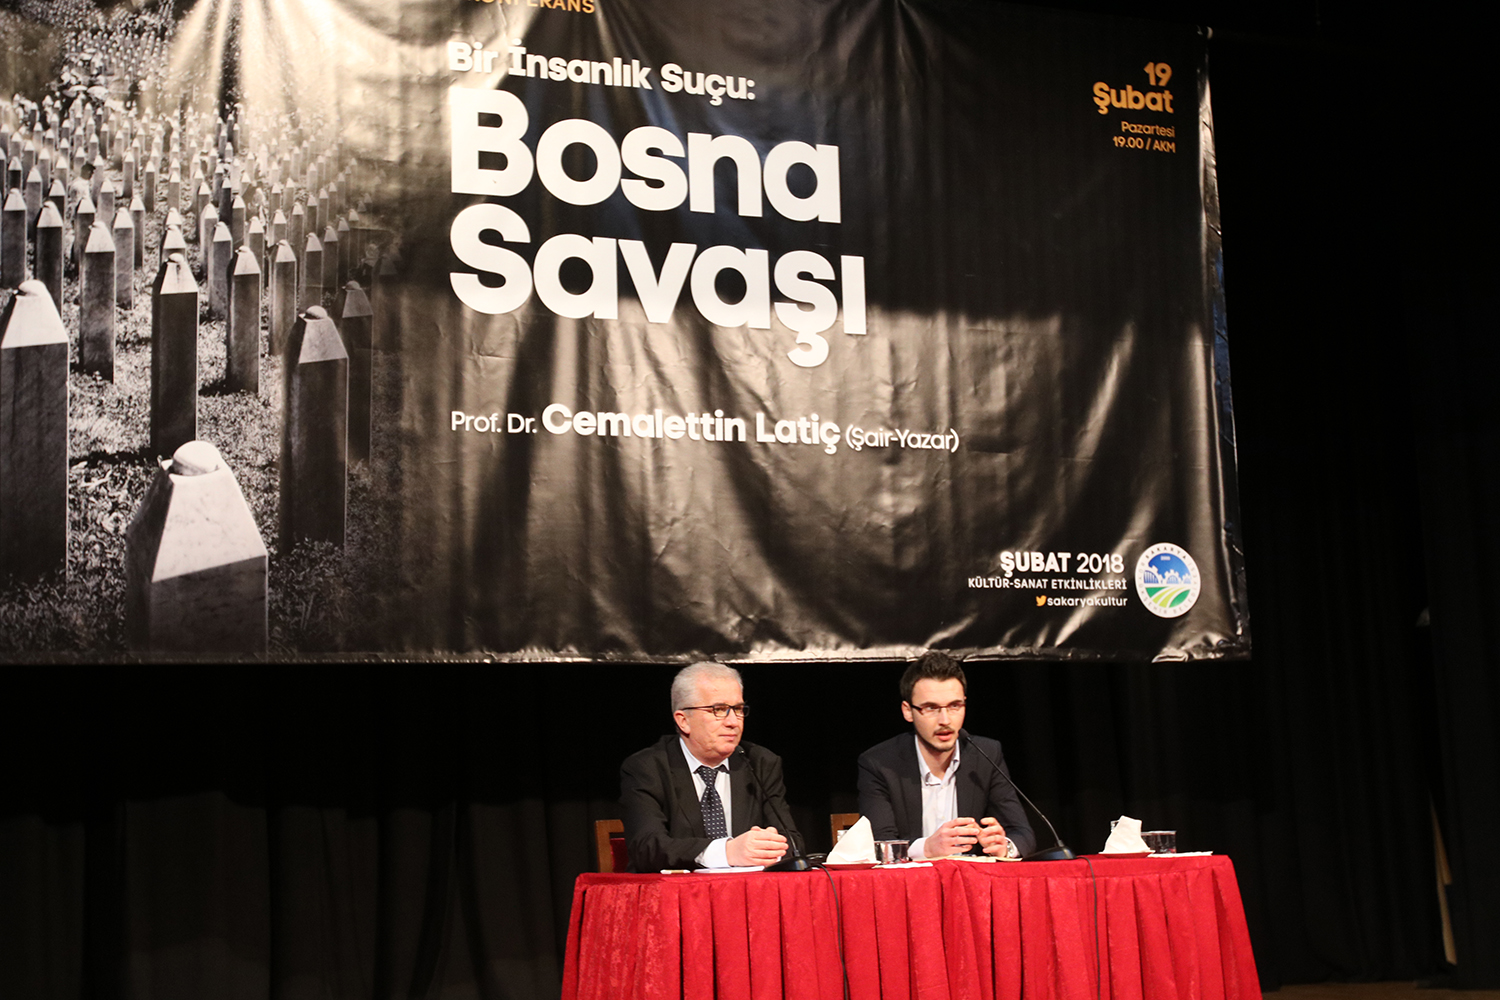 Bosna Hersek Türk mirasıdır